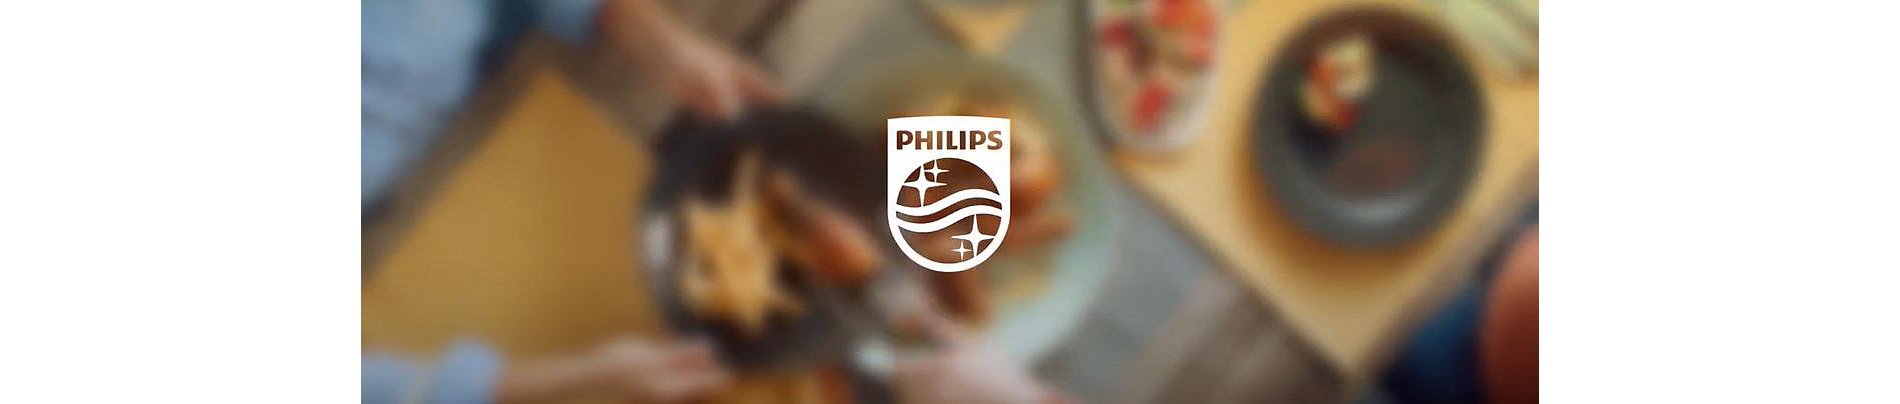 Super soldes MediaMarkt : offrez-vous la friteuse Philips Airfryer